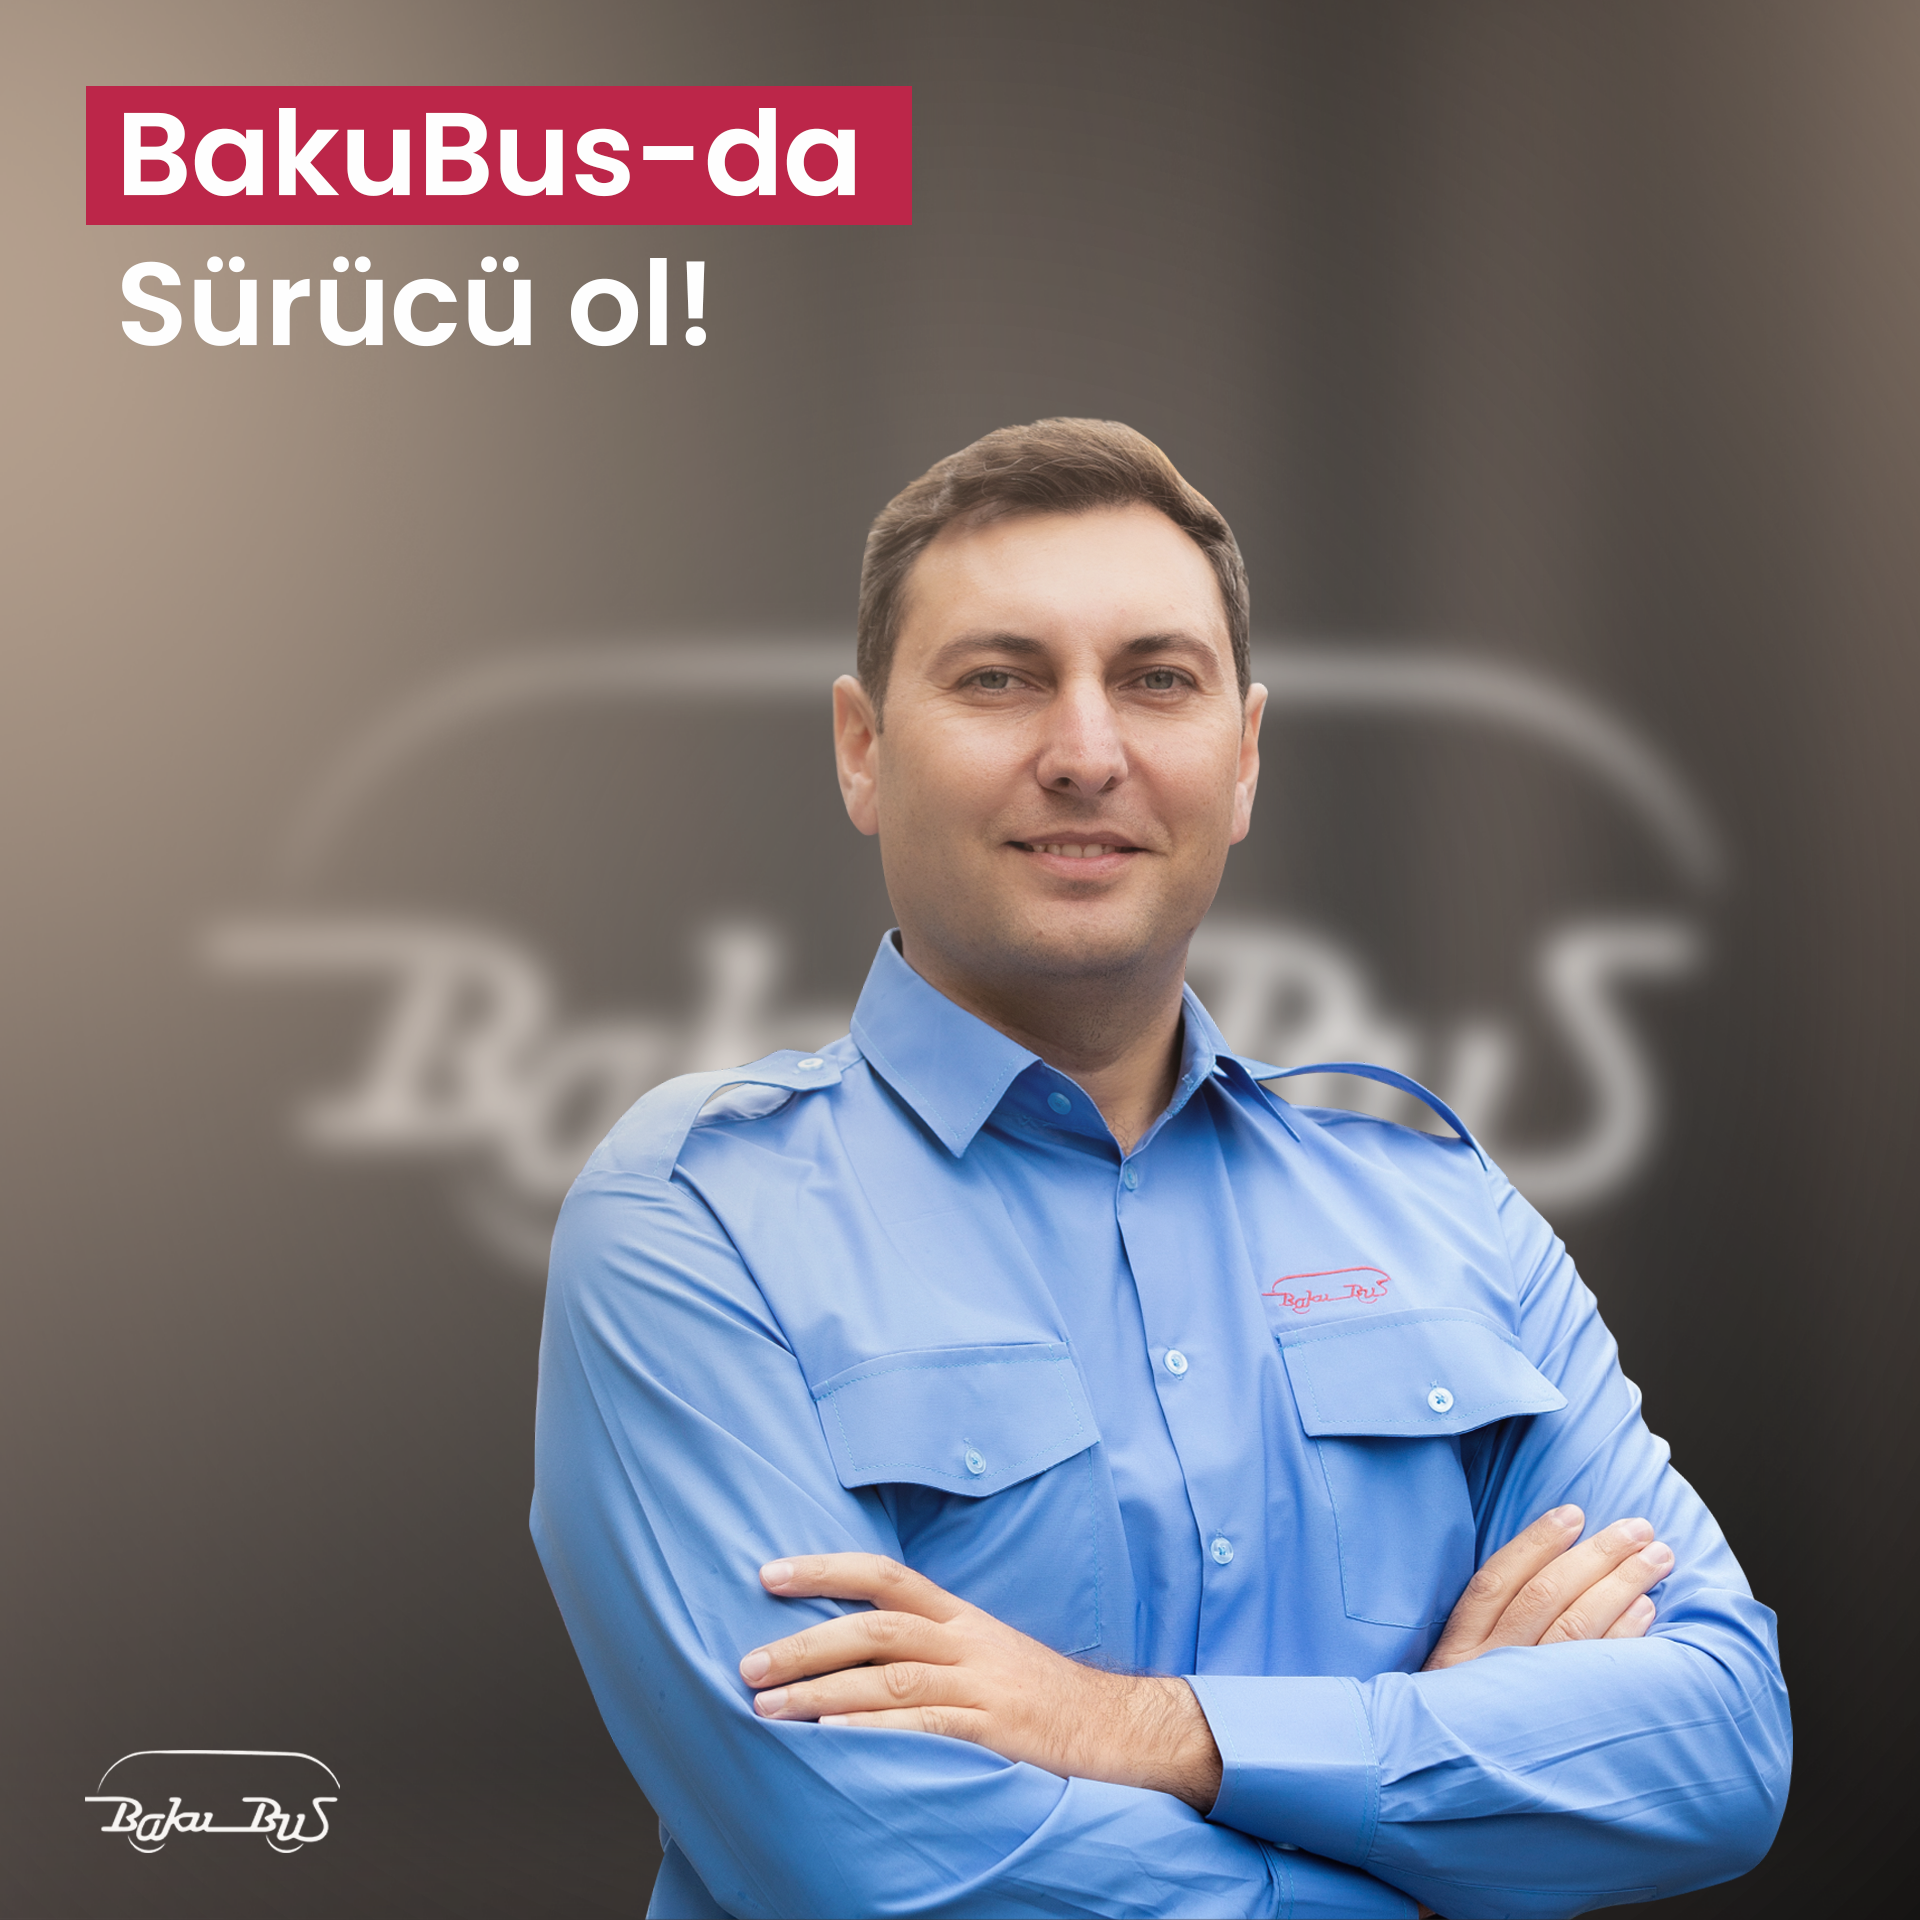 “BakuBus”MMC-də sürücü olmaq istəyənlərin nəzərinə!